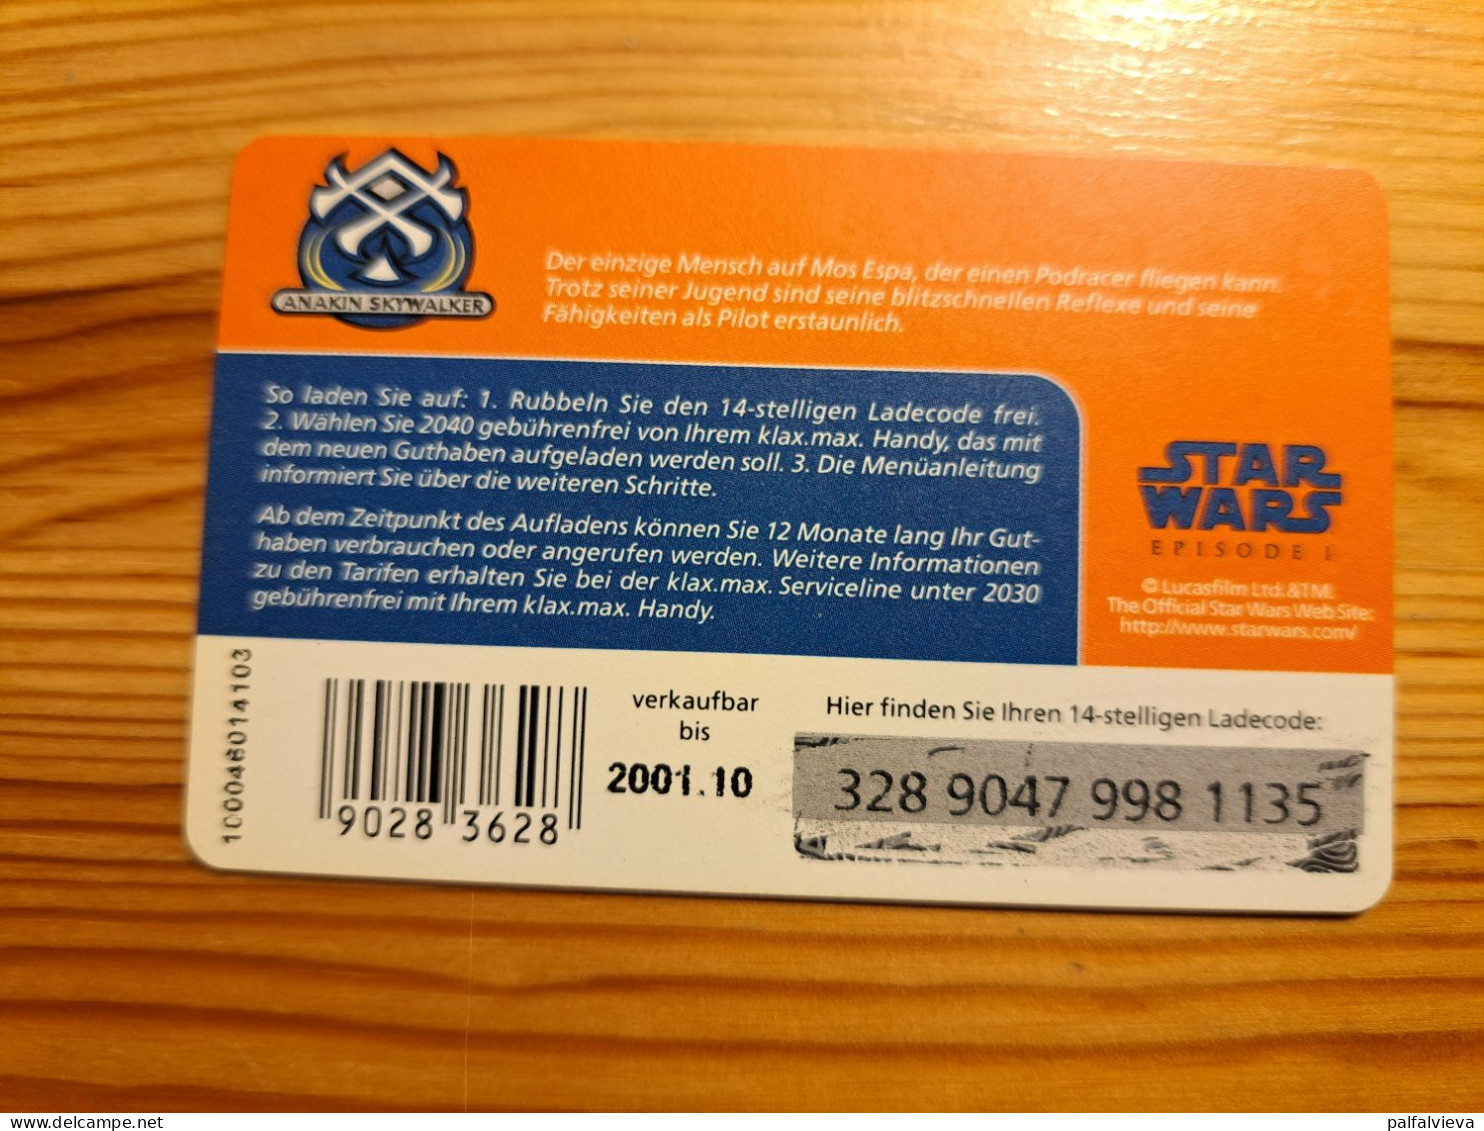 Prepaid Phonecard Austria, Klax Max - Star Wars - Austria